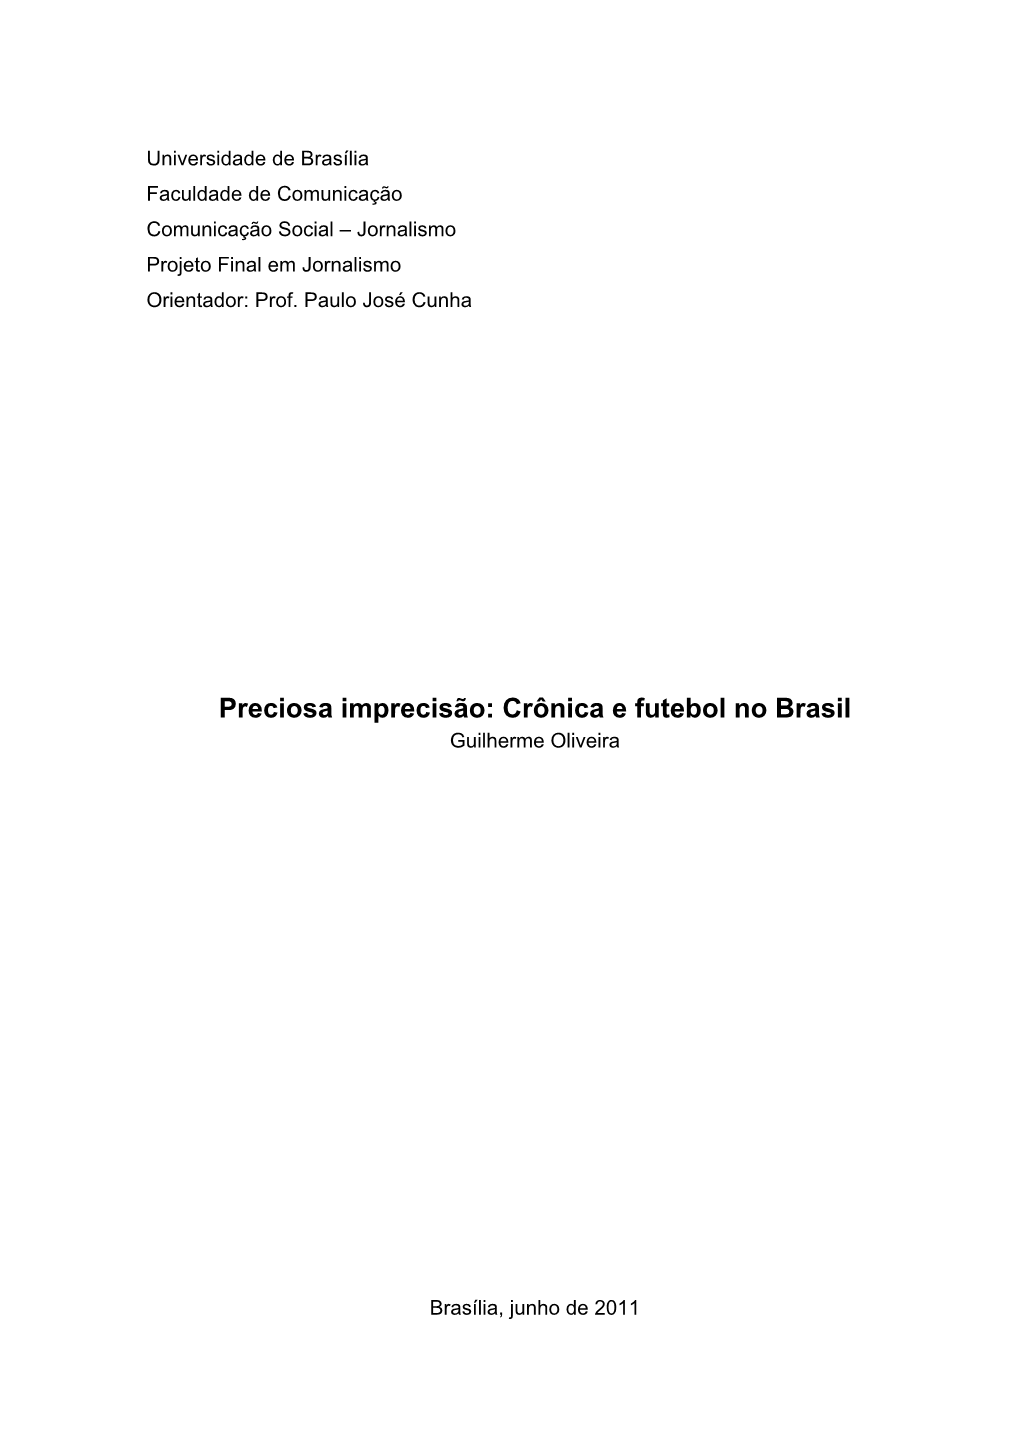 Crônica E Futebol No Brasil Guilherme Oliveira